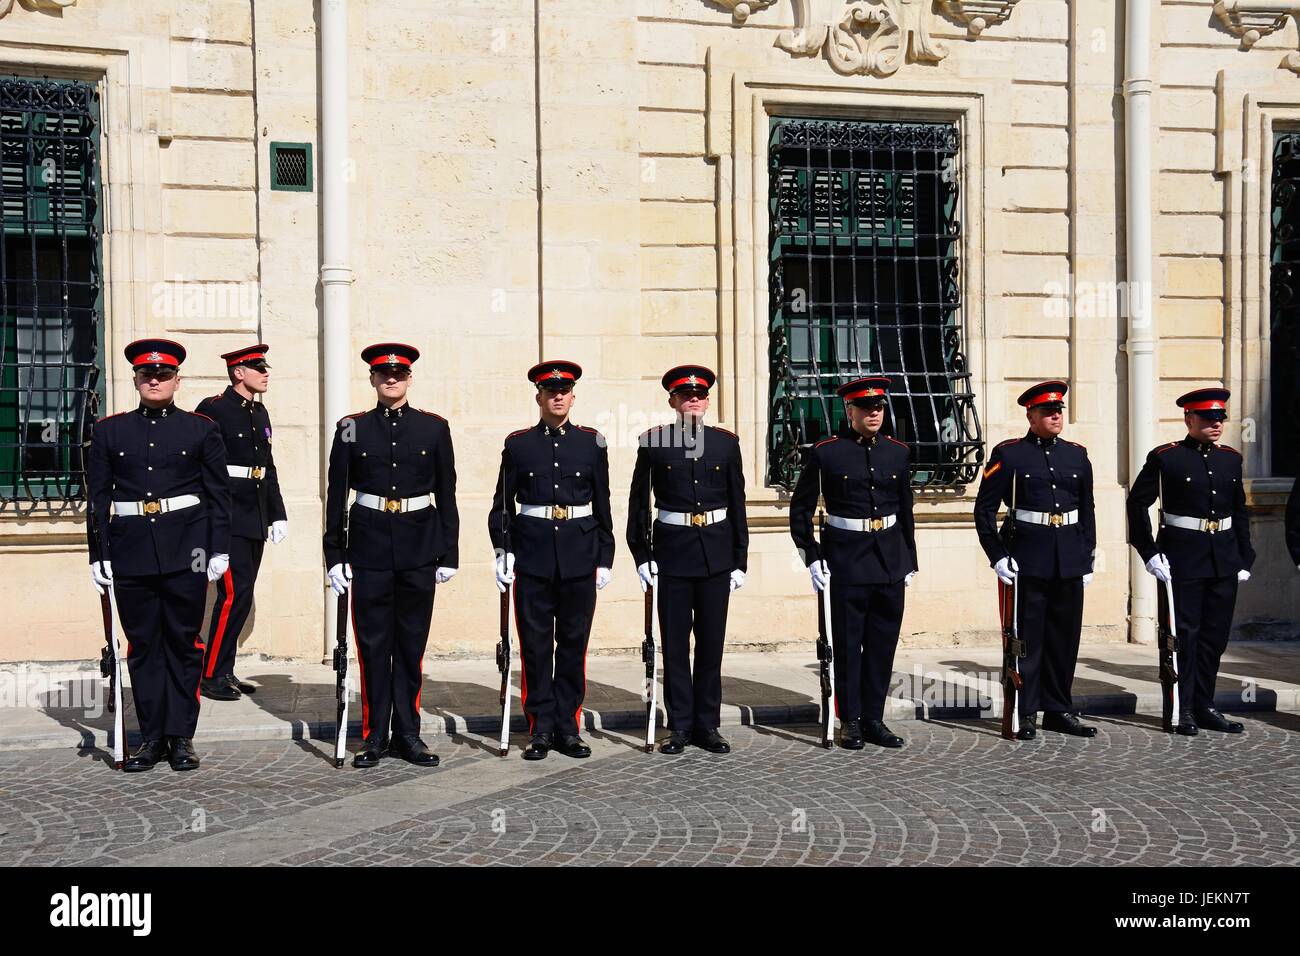 Uniformierte Soldaten auf der Parade außerhalb der Auberge de Castille für eine EU-Konferenz in Castille Square, Valletta, Malta, Europa. Stockfoto